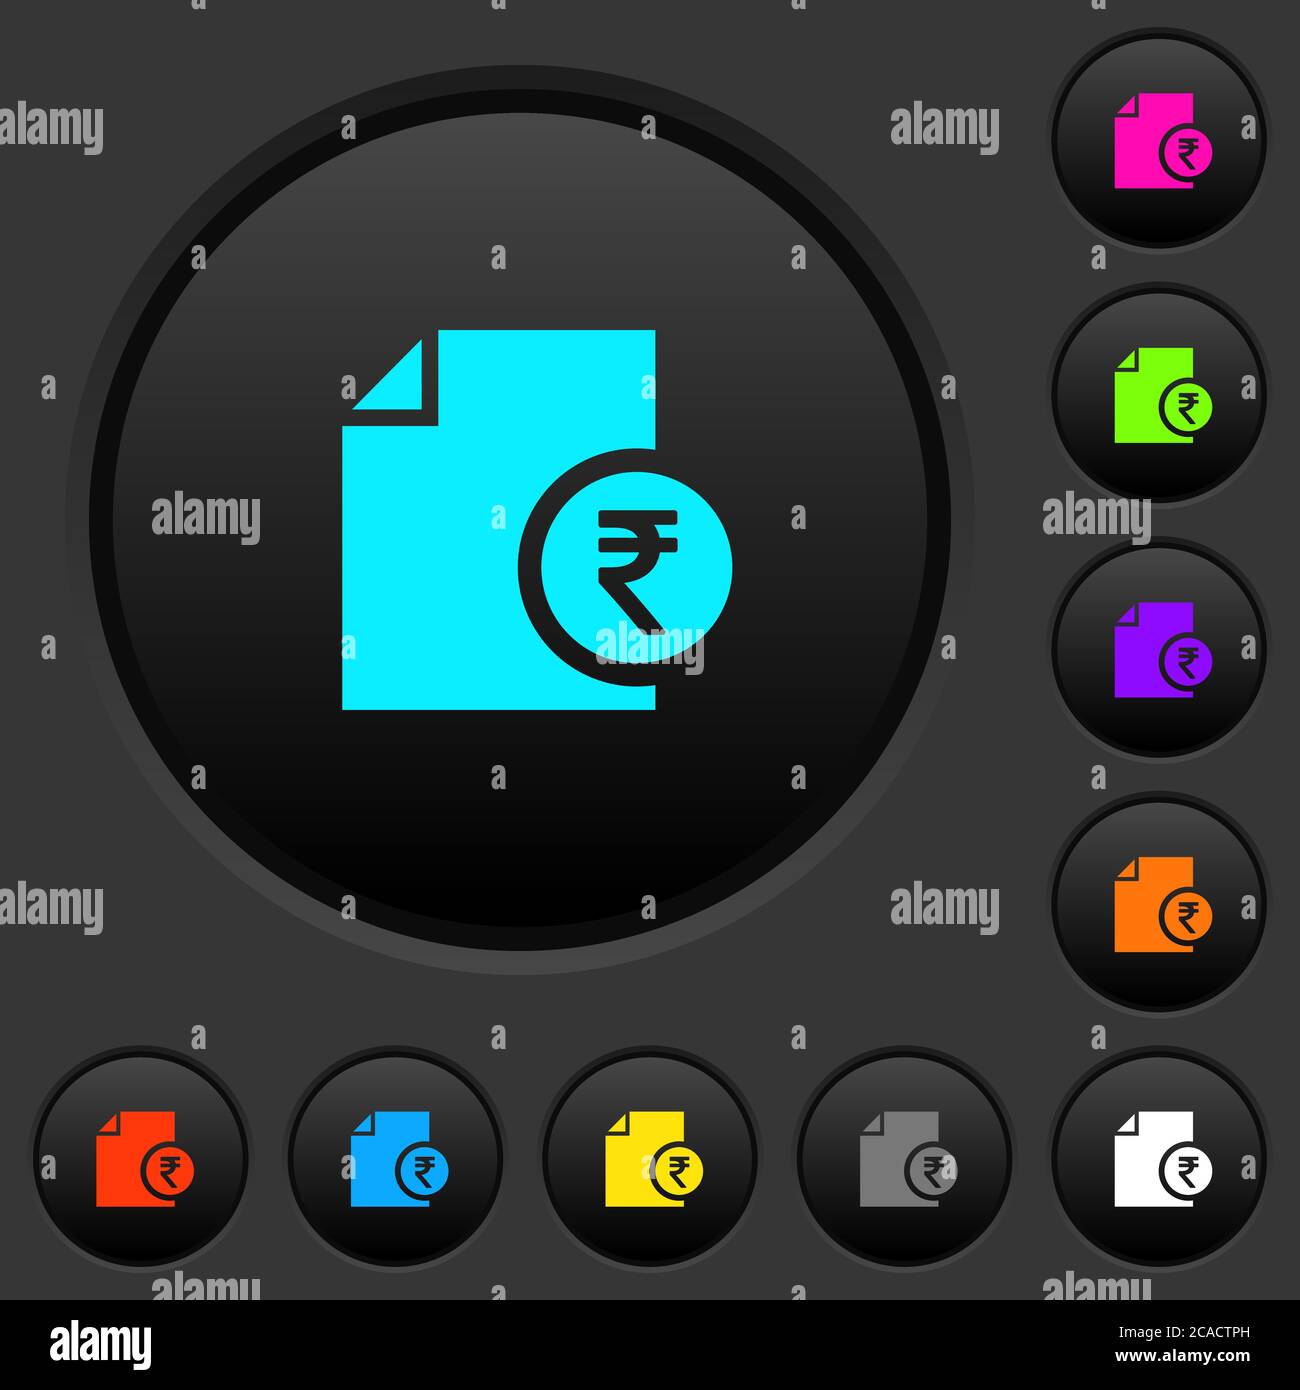 Rapport financier de la roupie indienne boutons-poussoirs sombres avec des icônes de couleur vive sur fond gris foncé Illustration de Vecteur